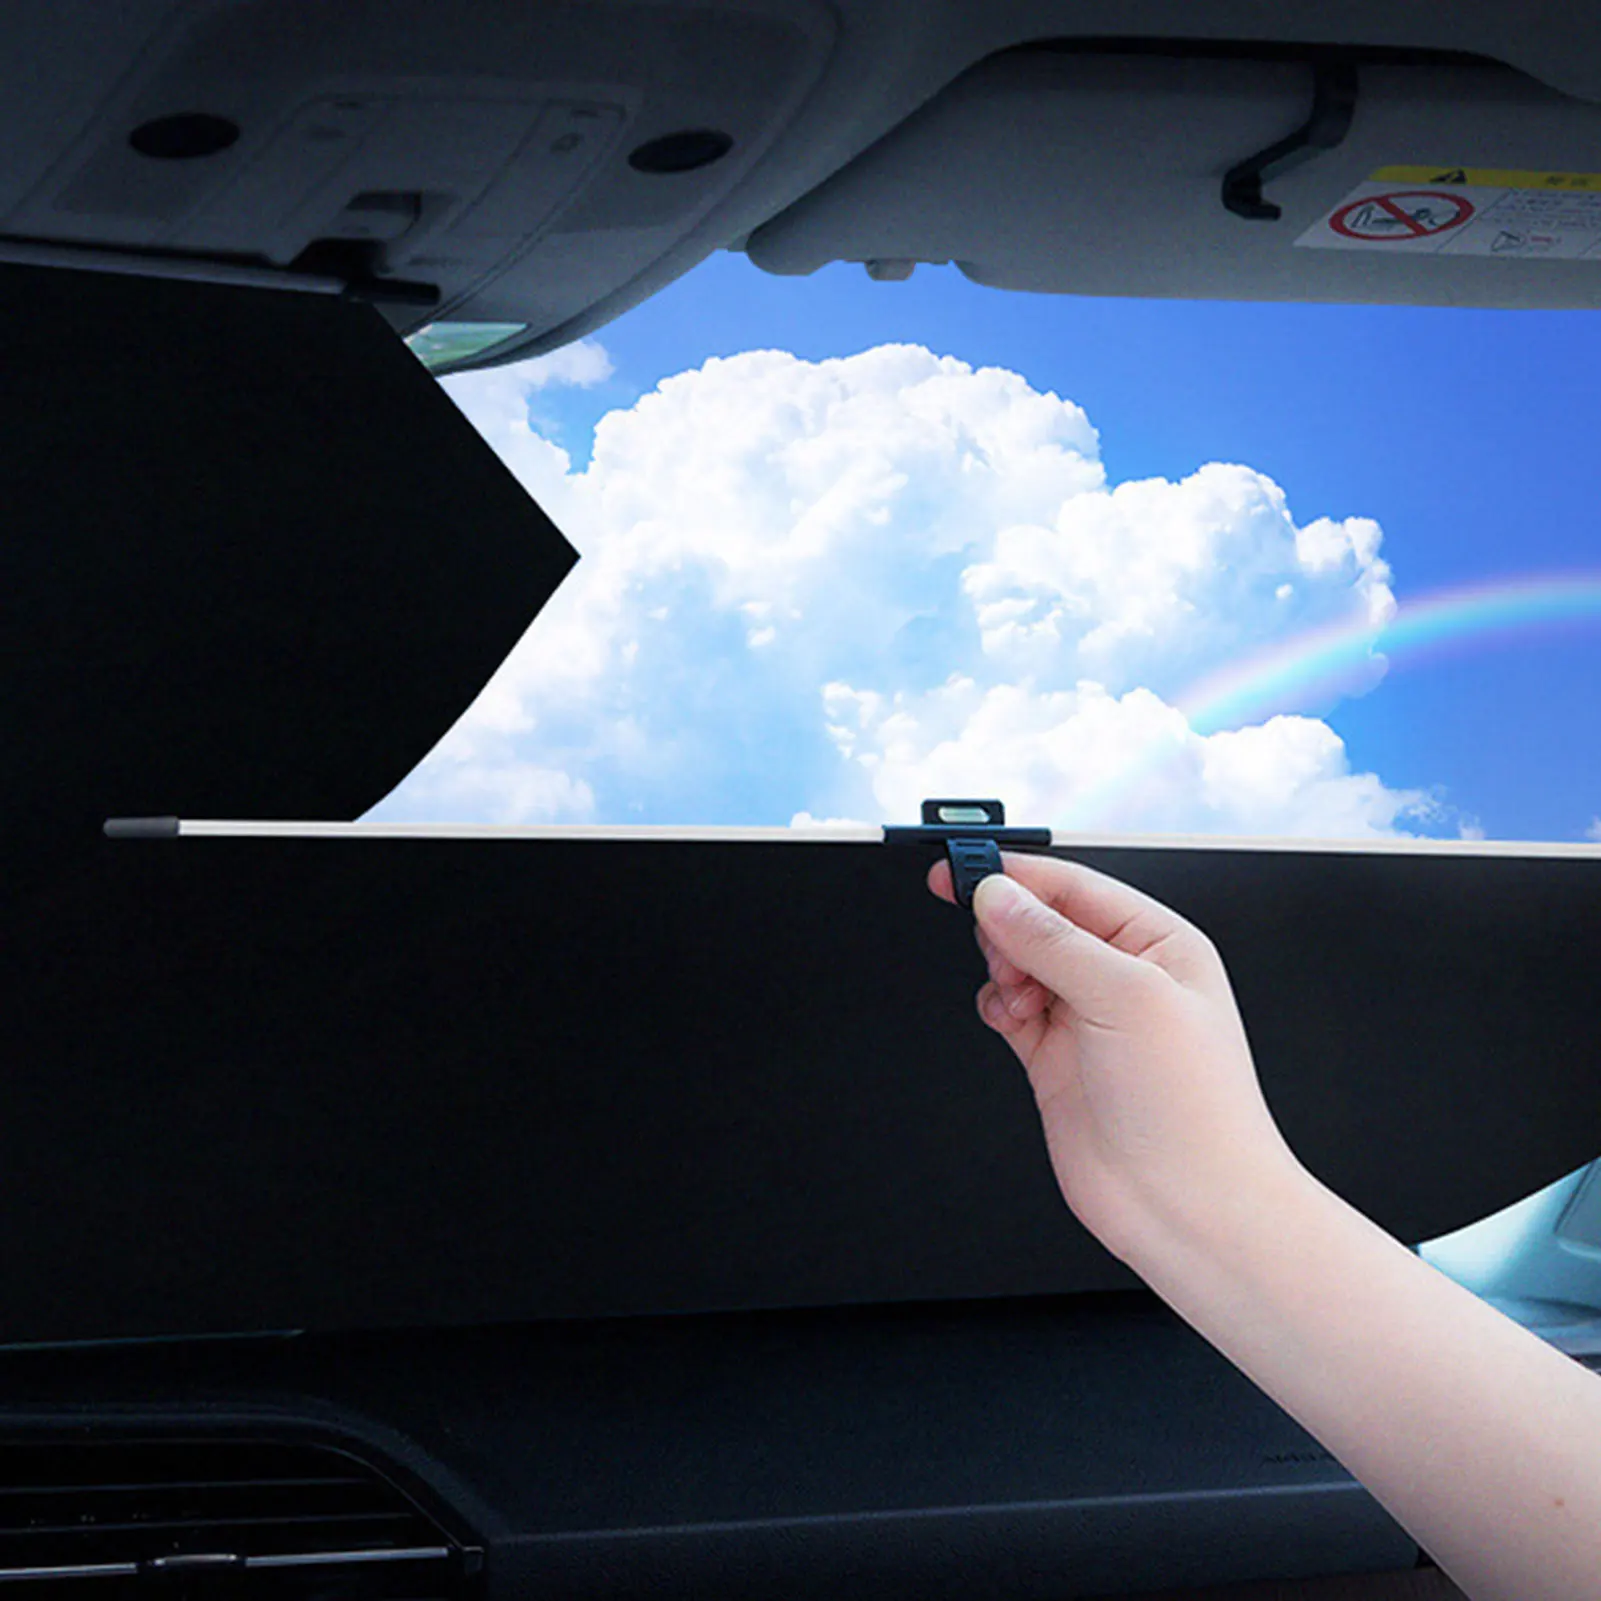 Kerai Kaca Depan Dapat Ditarik Pelindung Matahari Mobil Penutup Kerai Otomatis Dapat Dilipat Payung Jendela Depan Aksesori Interior Mobil Anti UV - 1